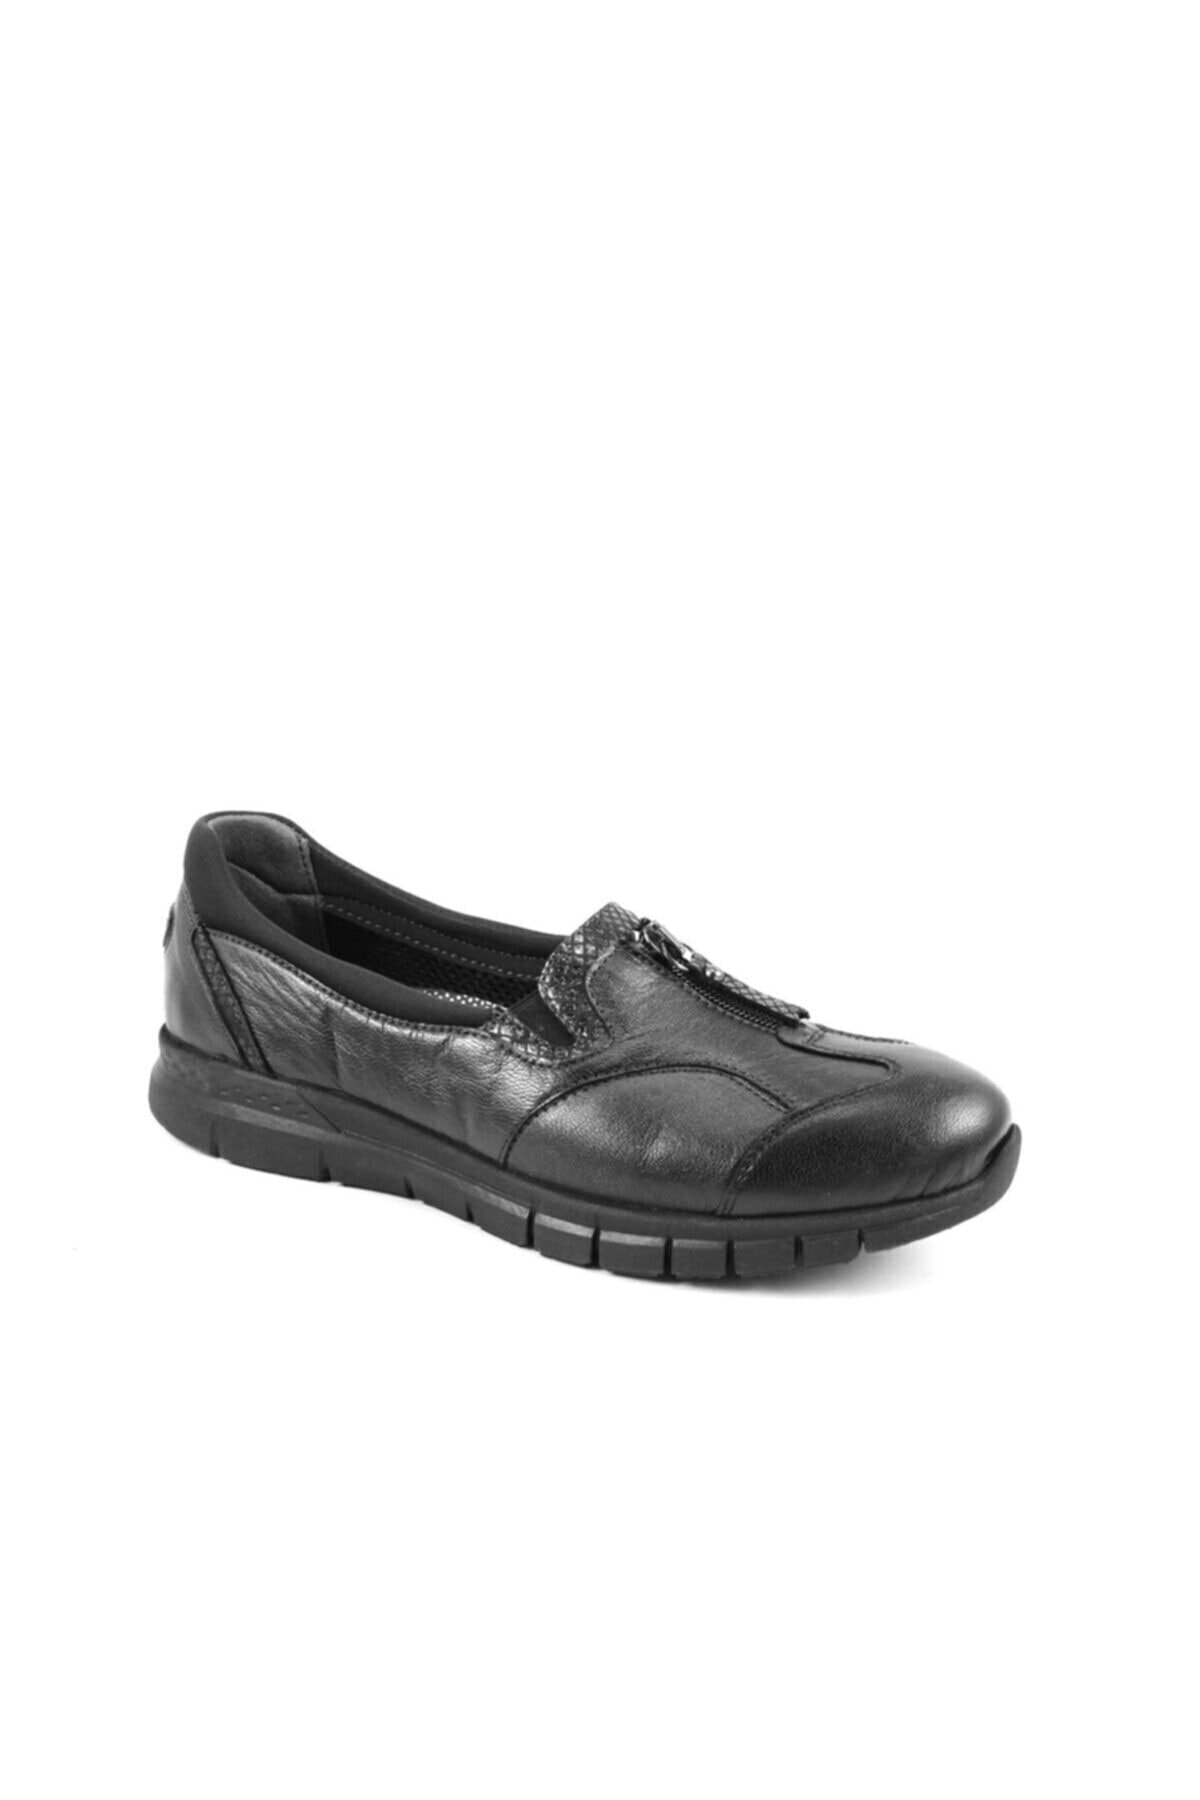 Forelli 29444 Kadın Siyah Deri Kemik Çıkıntısına Özel Comfort Ayakkabı